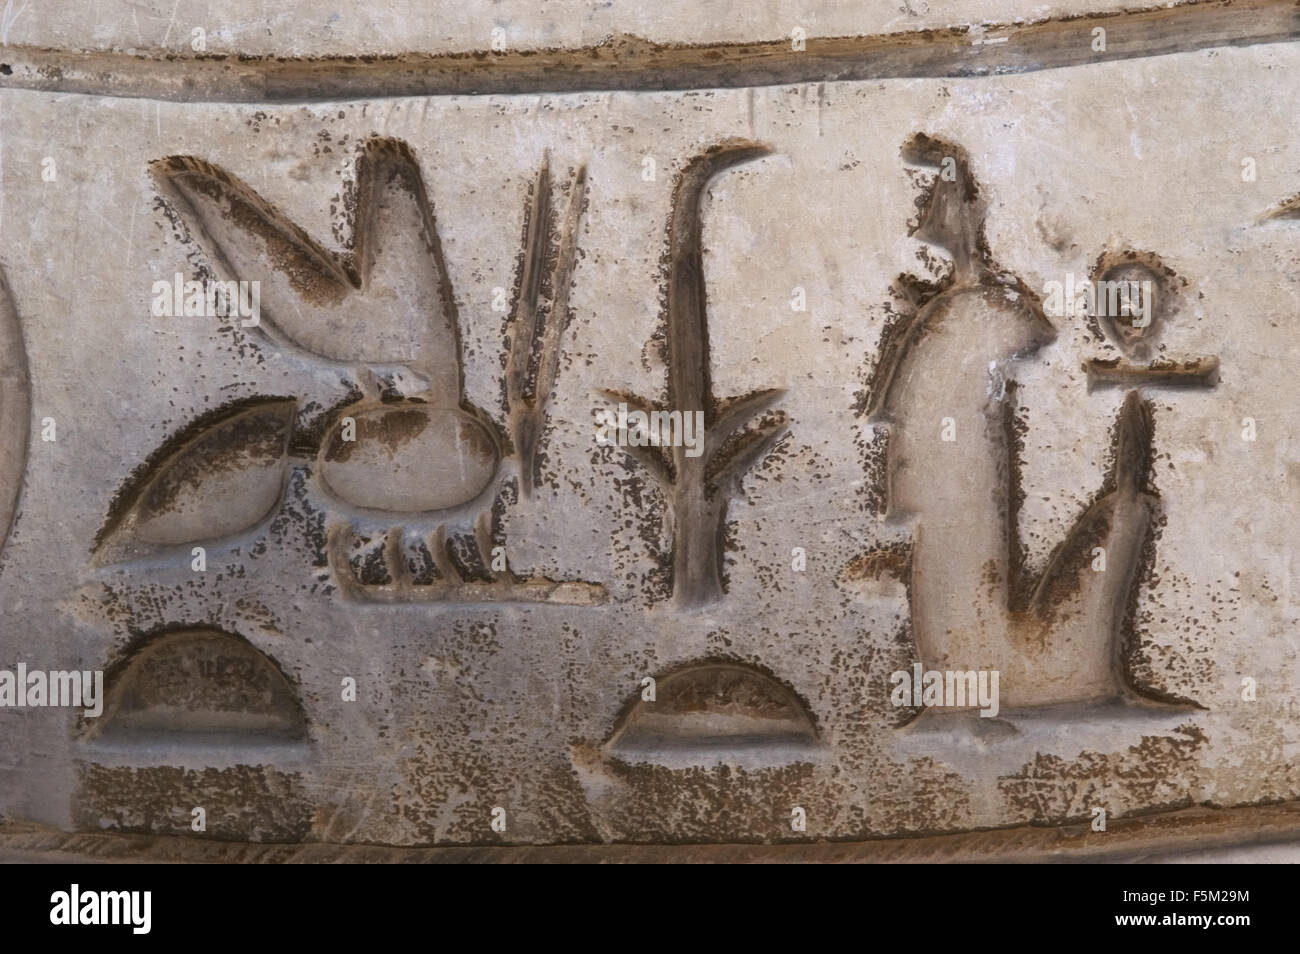 L'écriture hiéroglyphique. Mit Rahina Open Air Museum. Memphis. L'Égypte. Banque D'Images